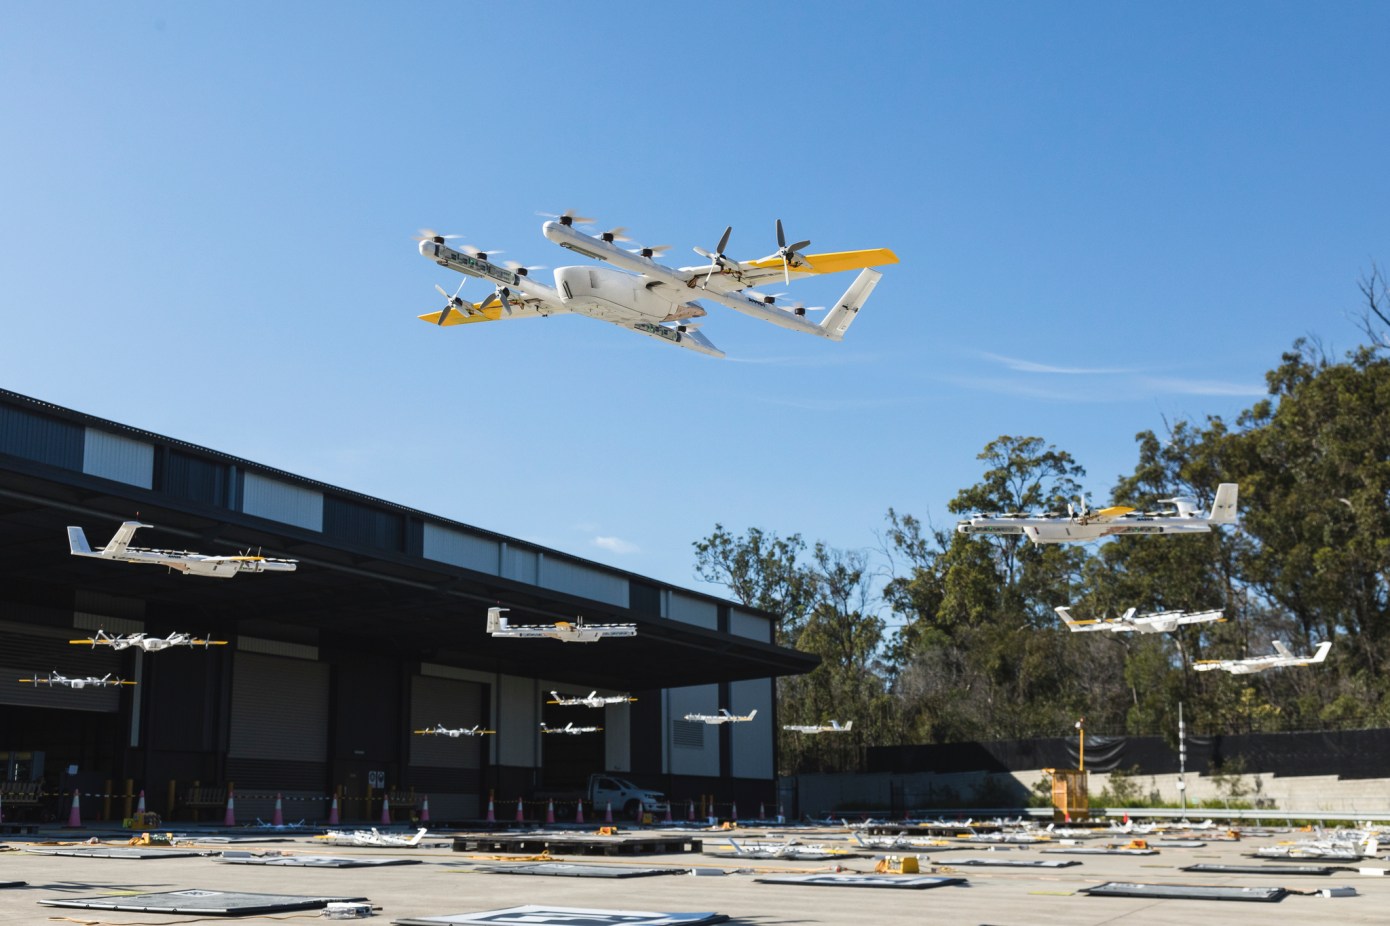 Walmart startet Wing-Drohnenlieferung in zwei Supermärkten in Texas, USA